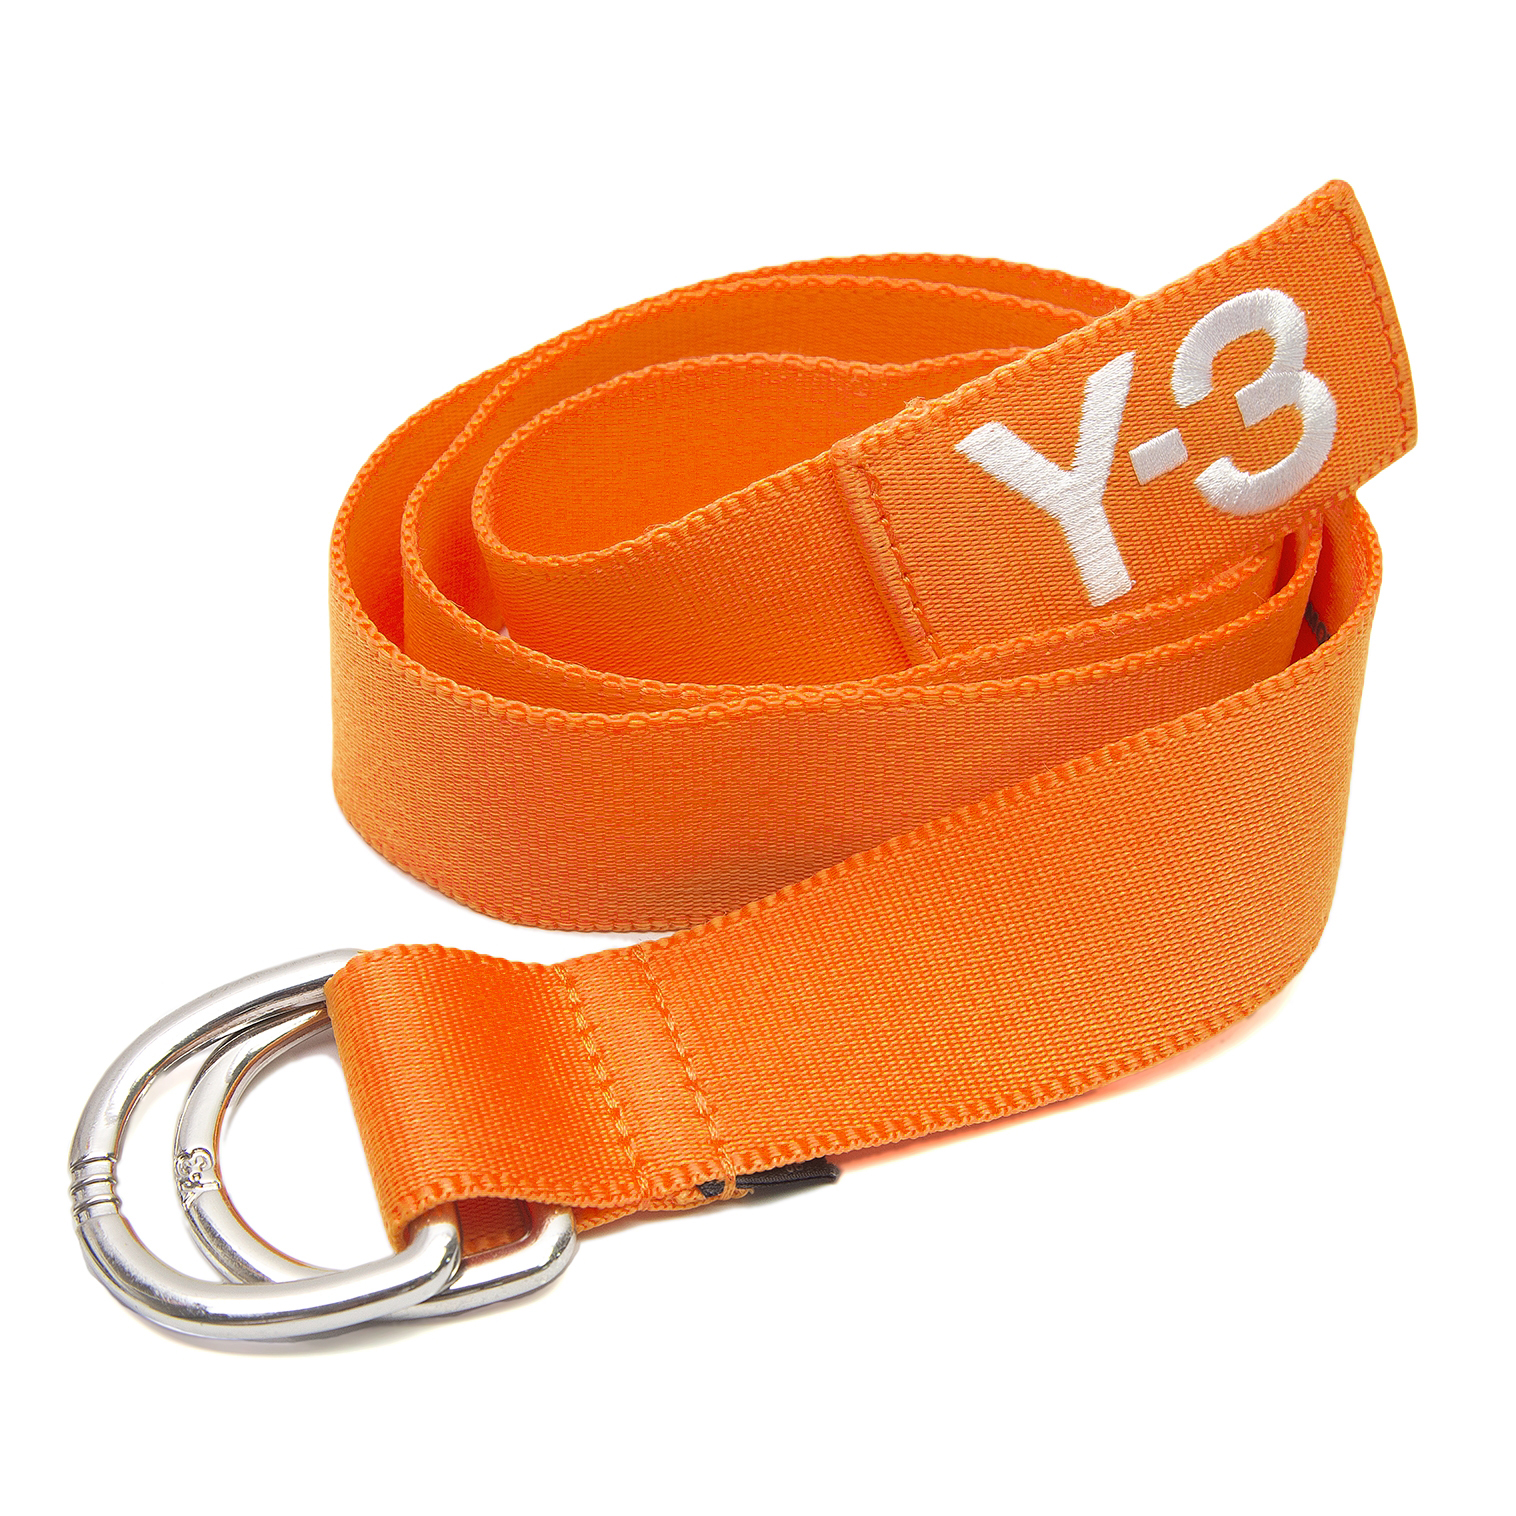 Y-3 ワイスリー ベルト - オレンジ